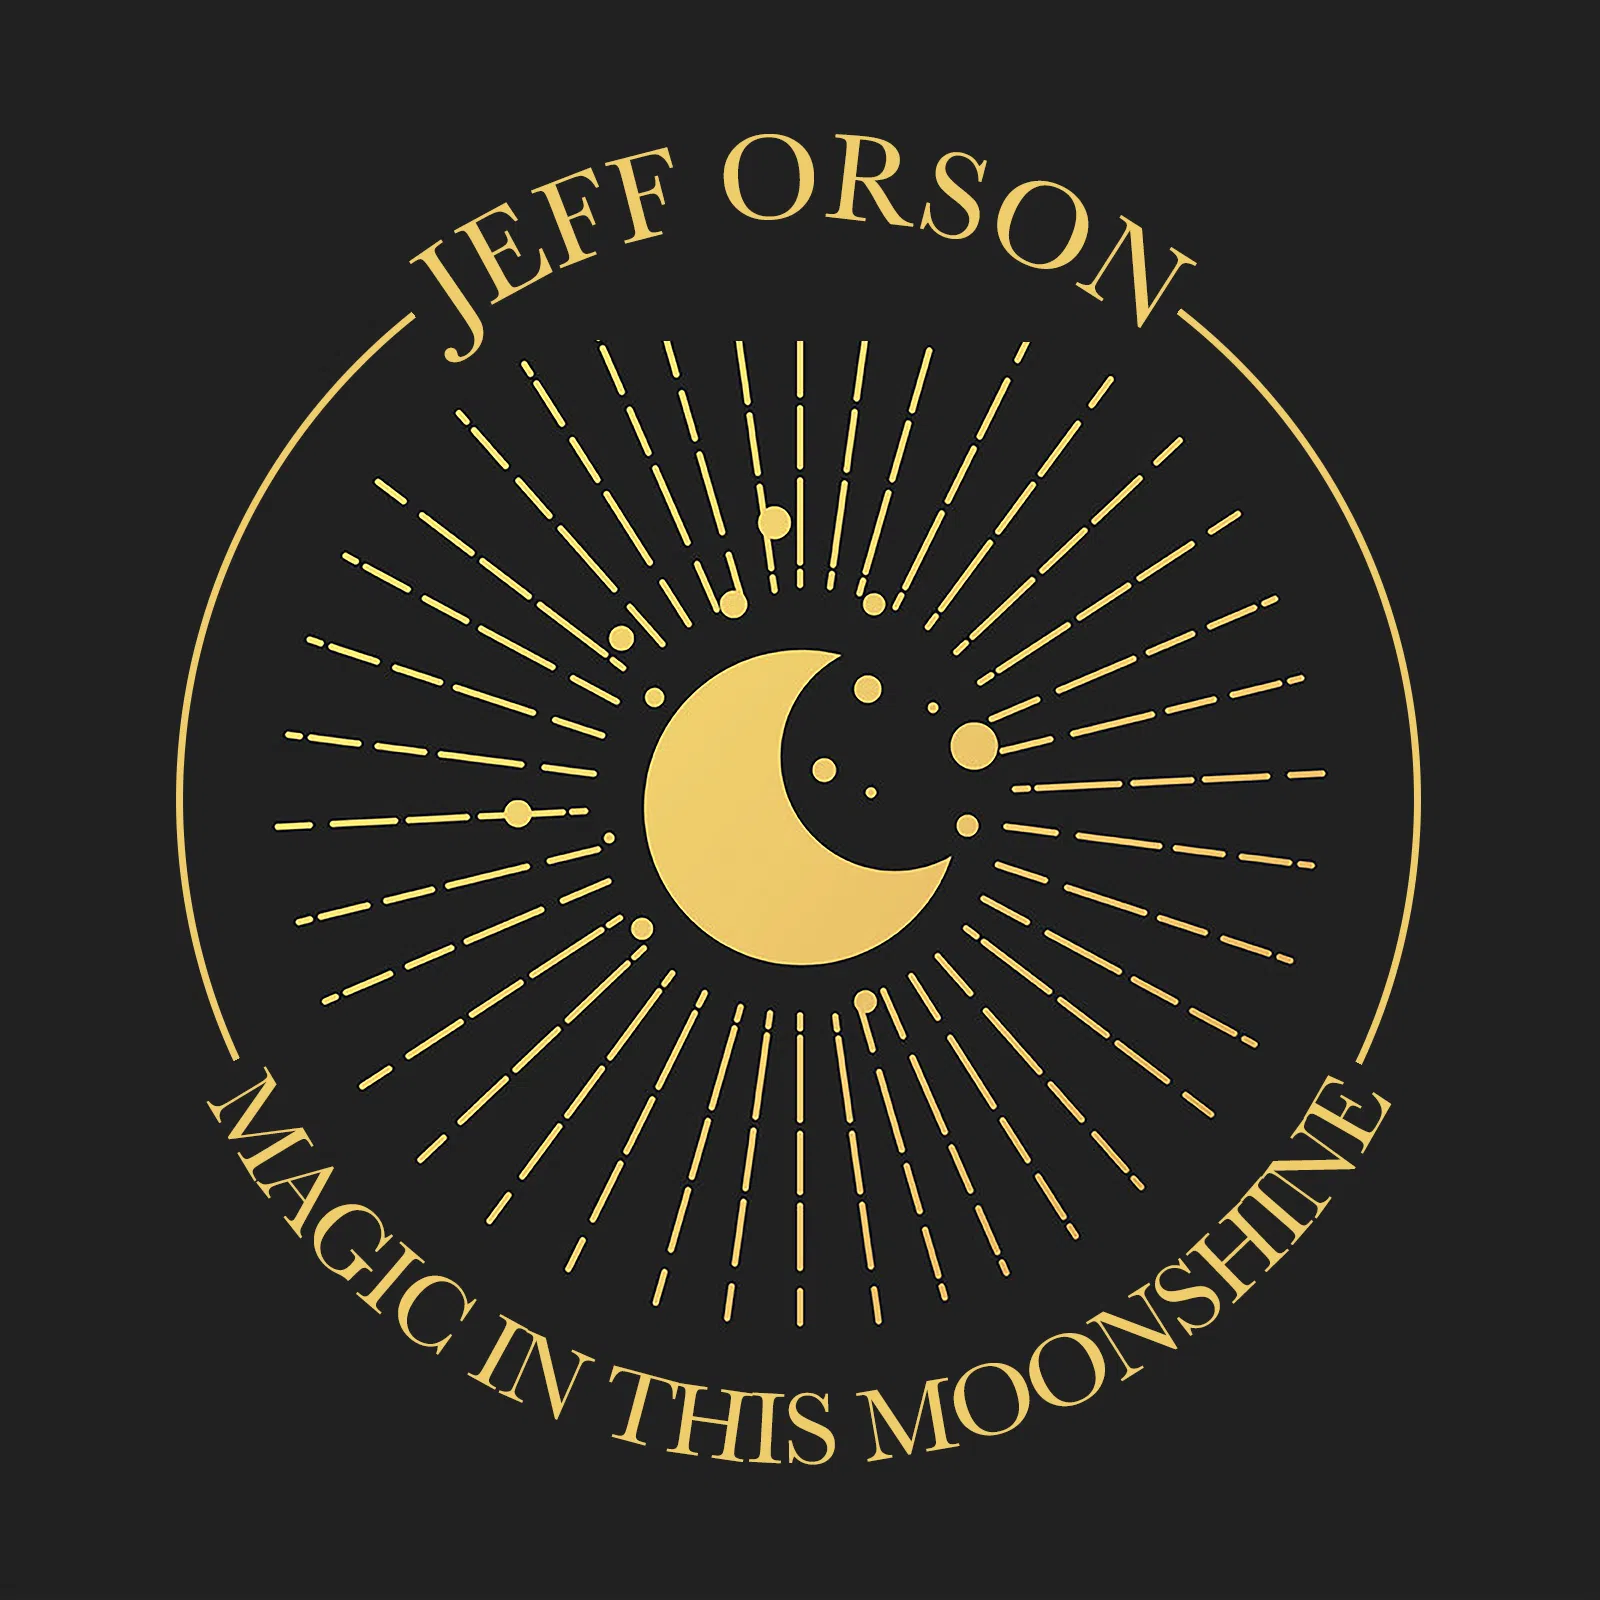 Fresh Picks – Jeff Orson